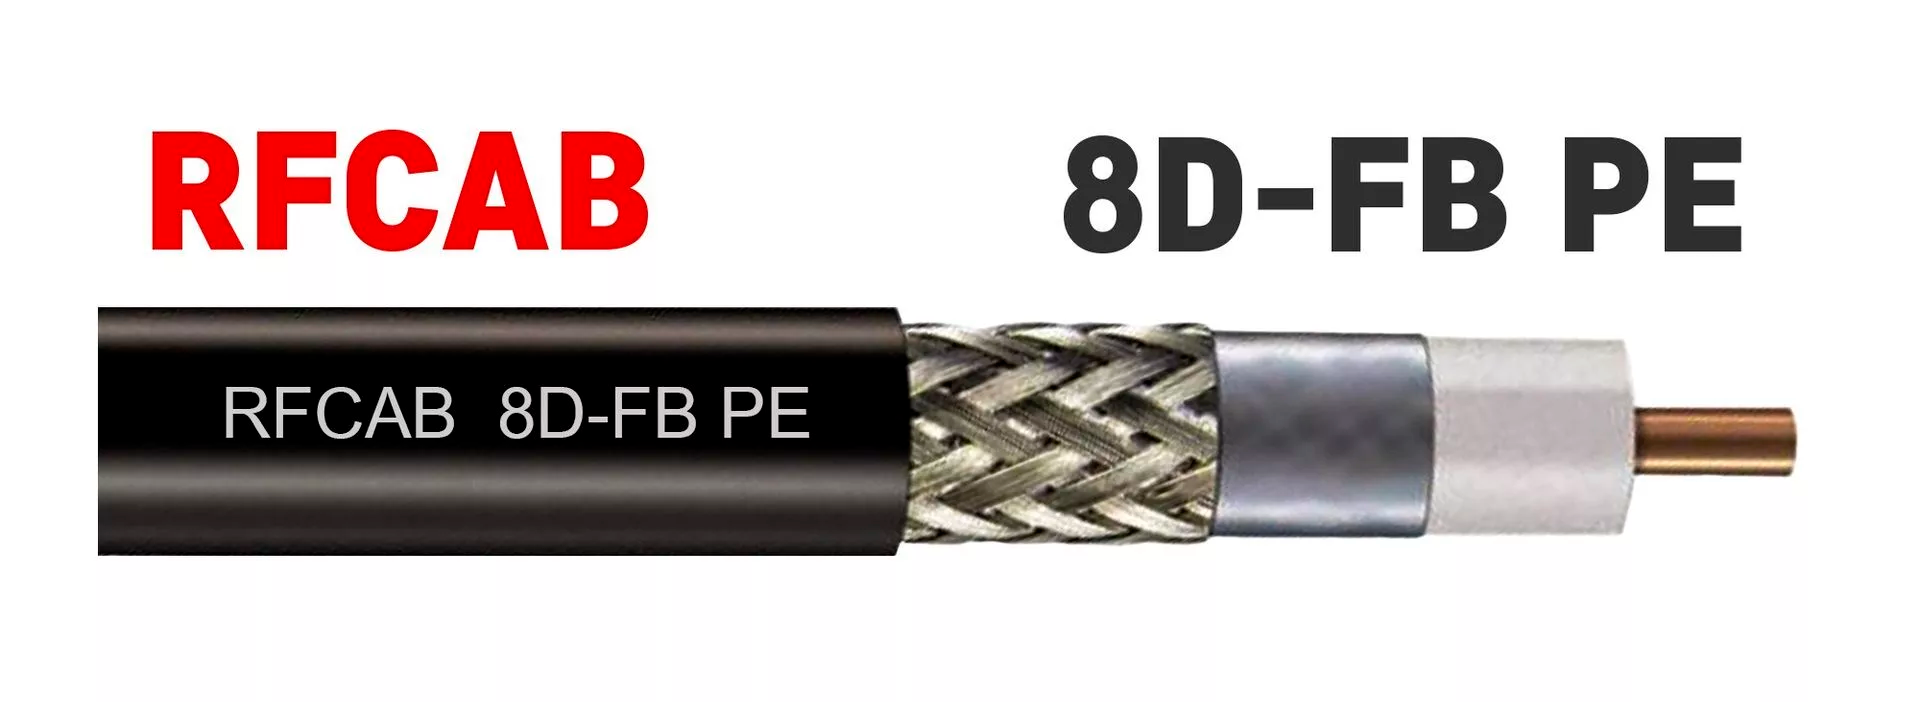 RFCAB 8D-FB PE радиочастотный коаксиальный кабель с однопроволочной медной жилой